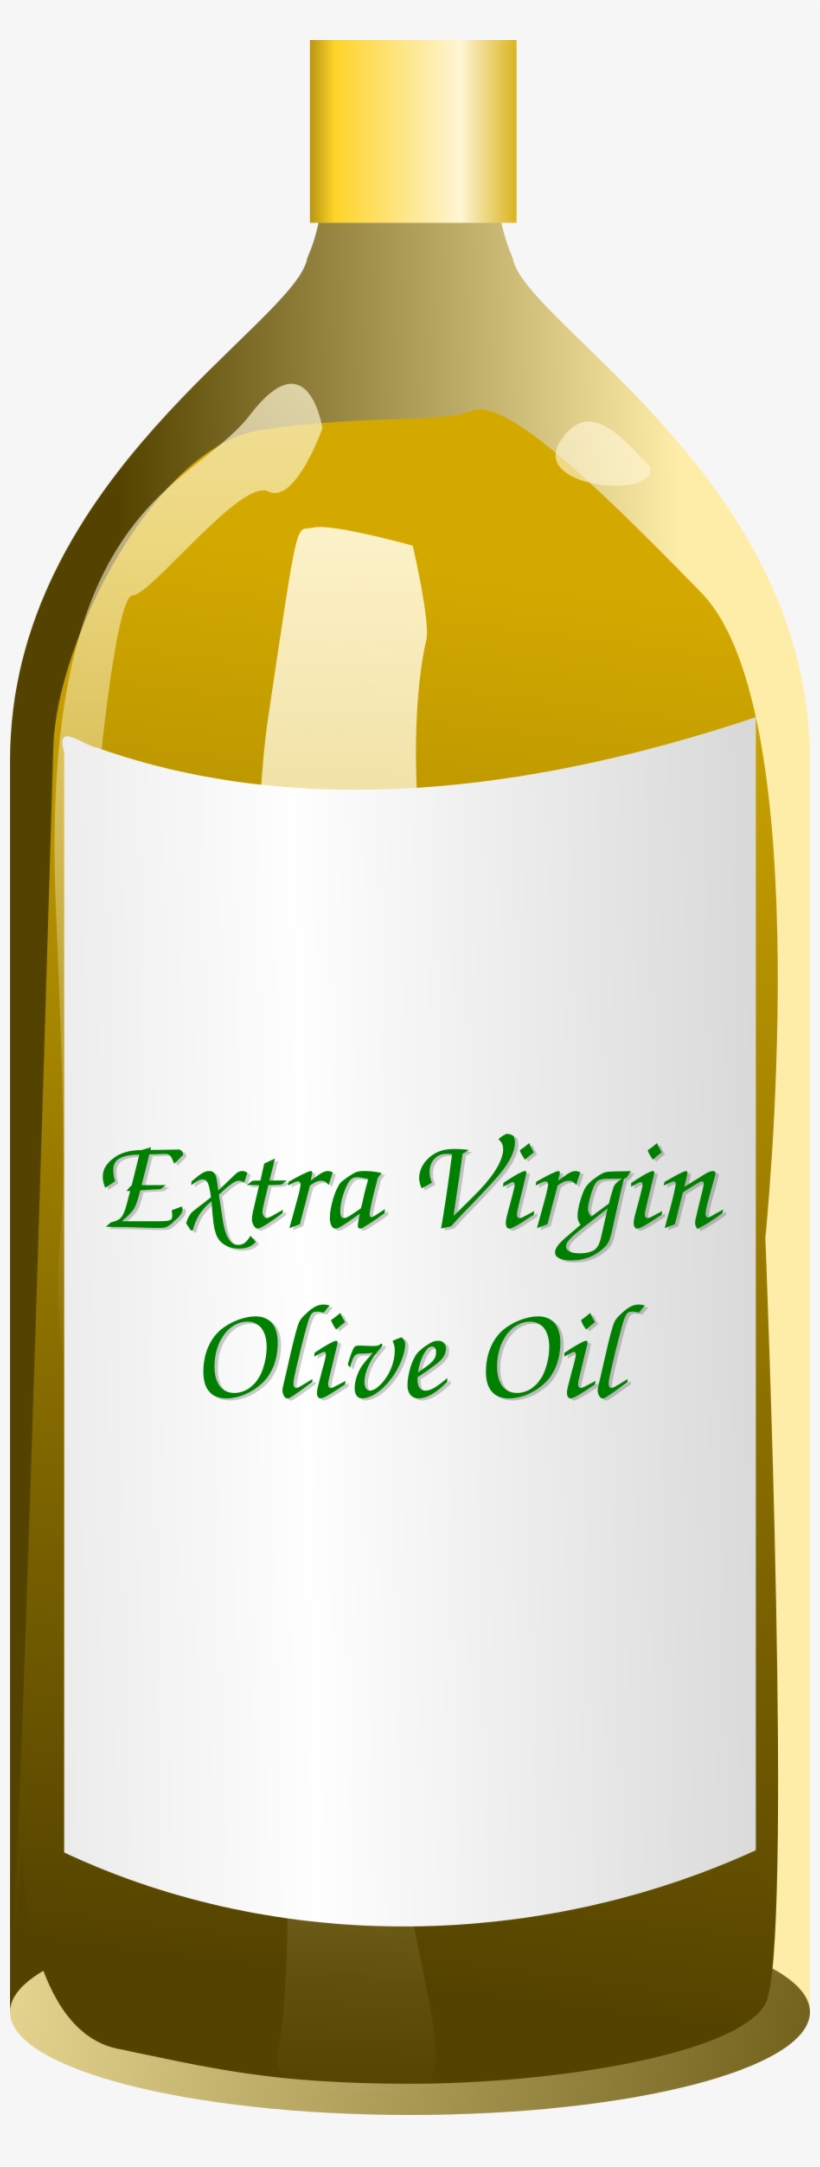 Clipart Extra Virgin Olive Oil Bottle - Clipart Olive Oil, transparent png #1702149